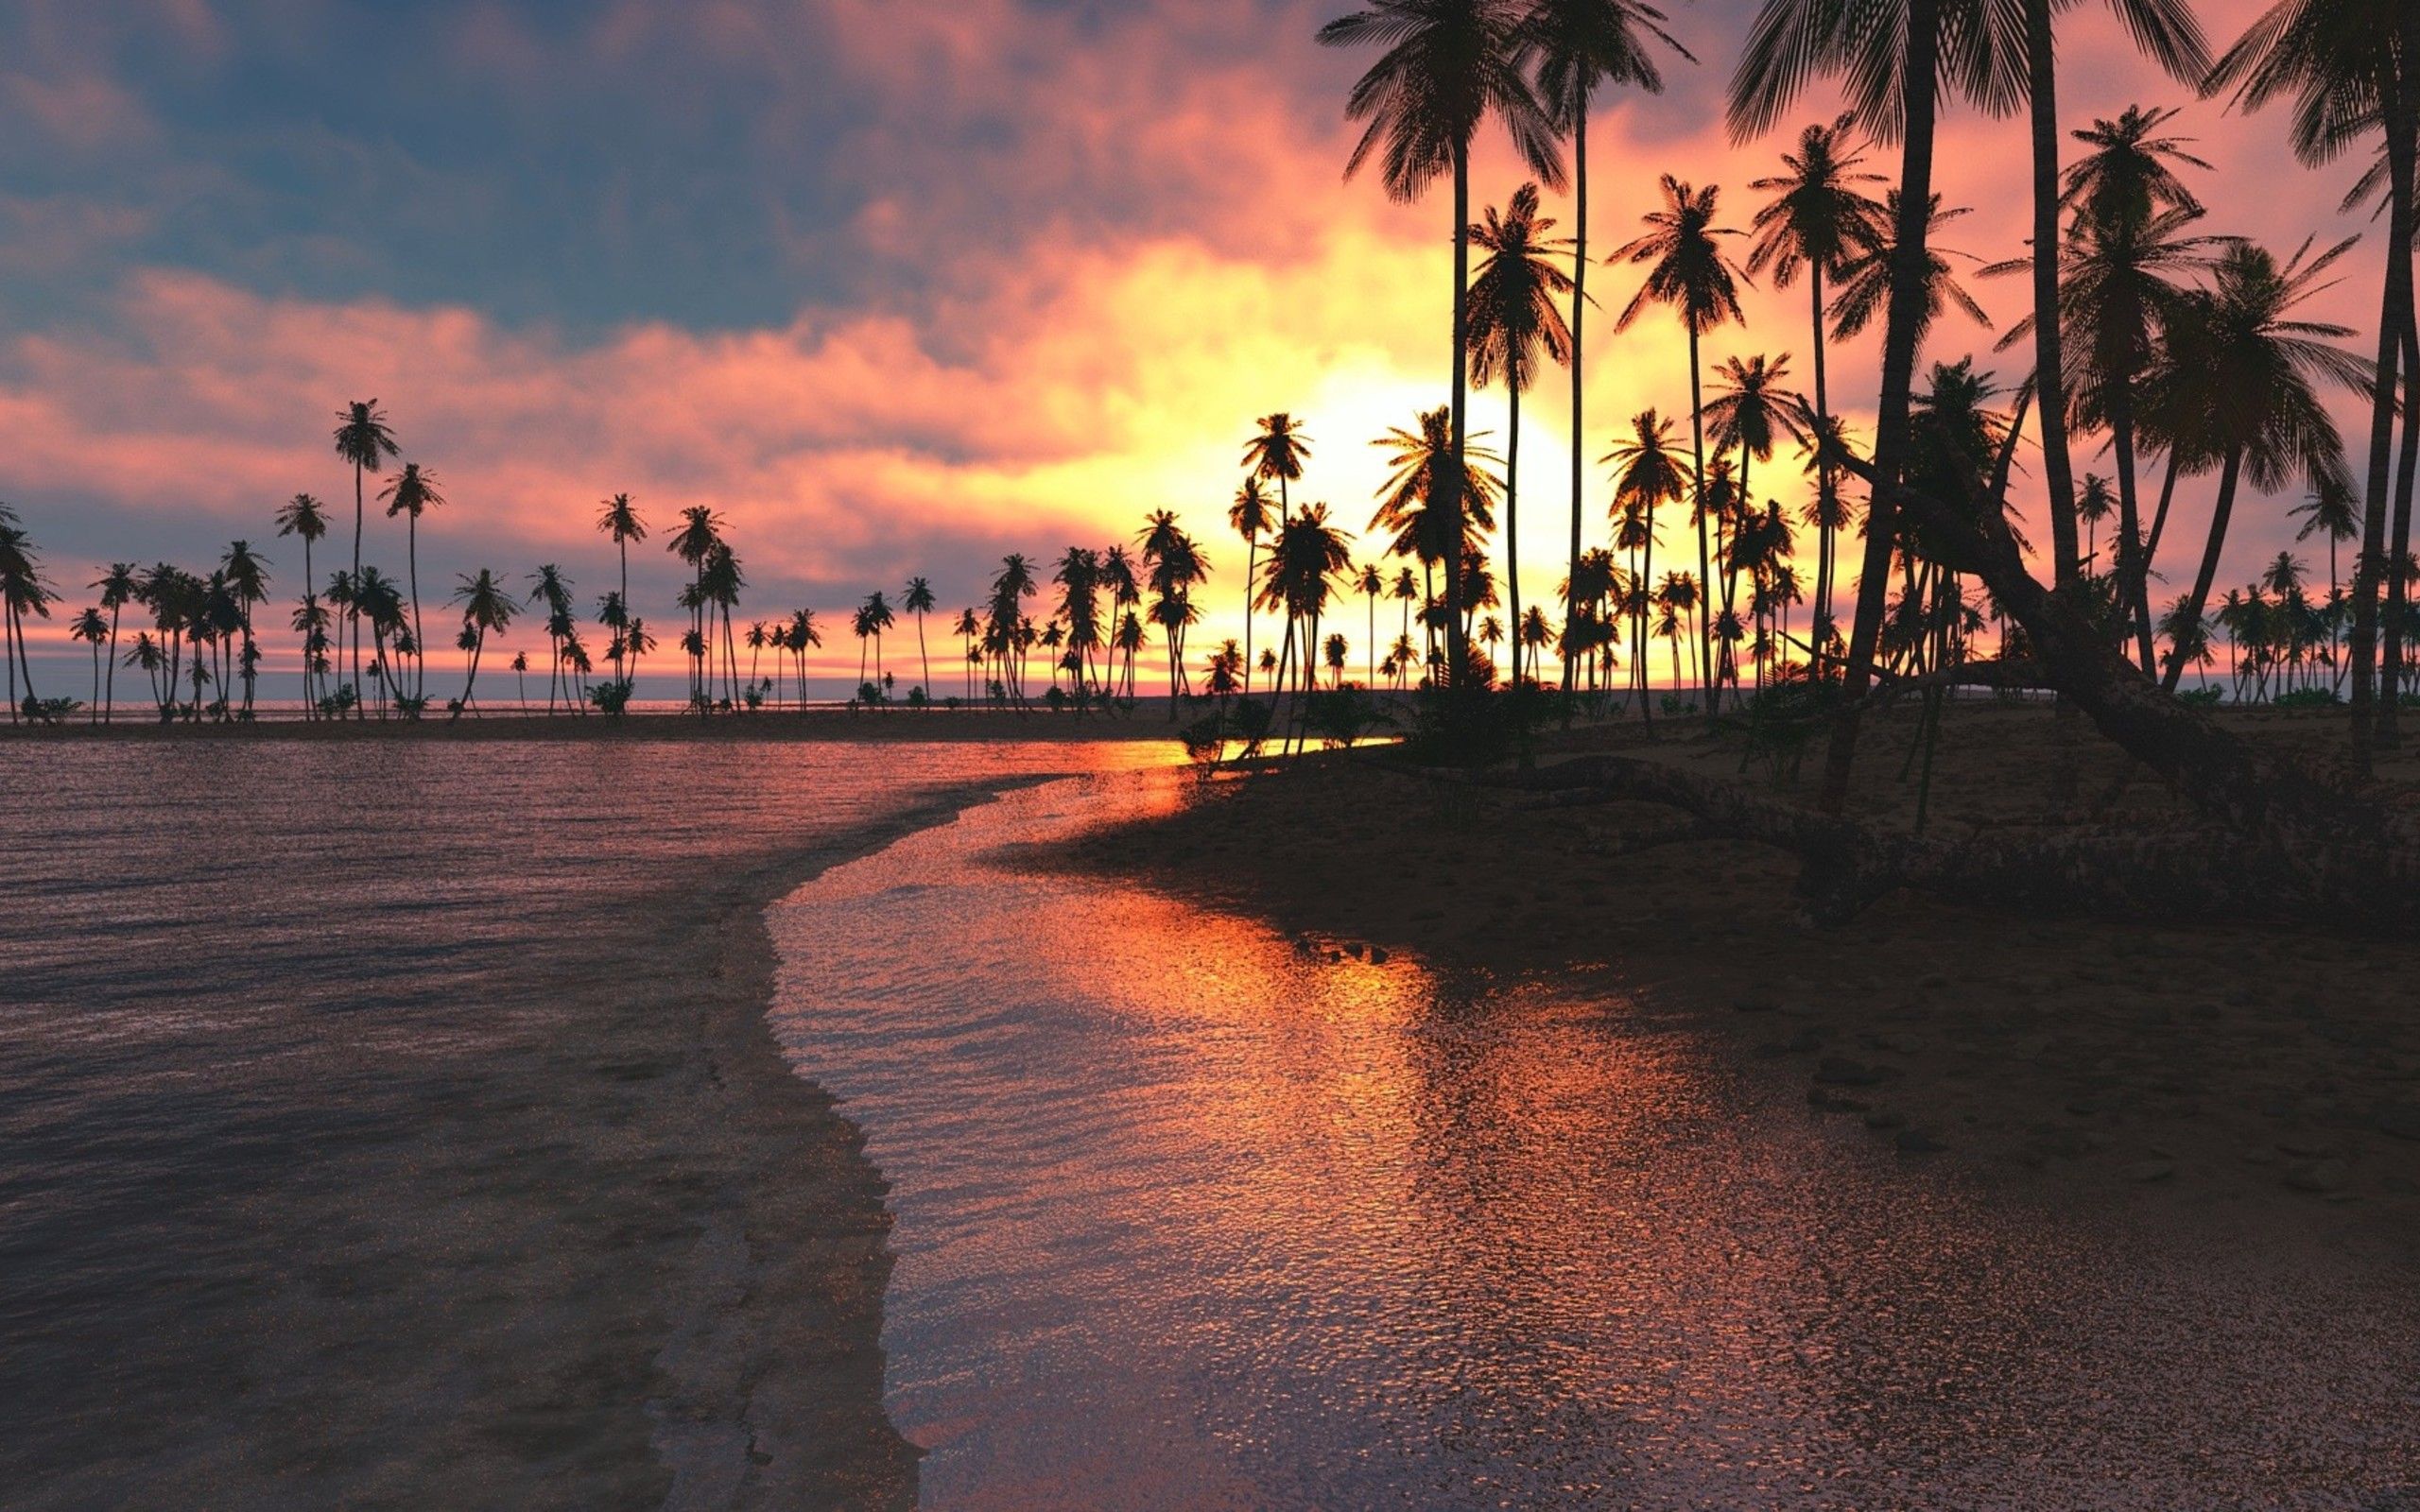  Sonnenaufgang Hintergrundbild 2560x1600. Kostenlose Hintergrundbilder Leute am Strand Bei Sonnenuntergang, Bilder Für Ihren Desktop Und Fotos